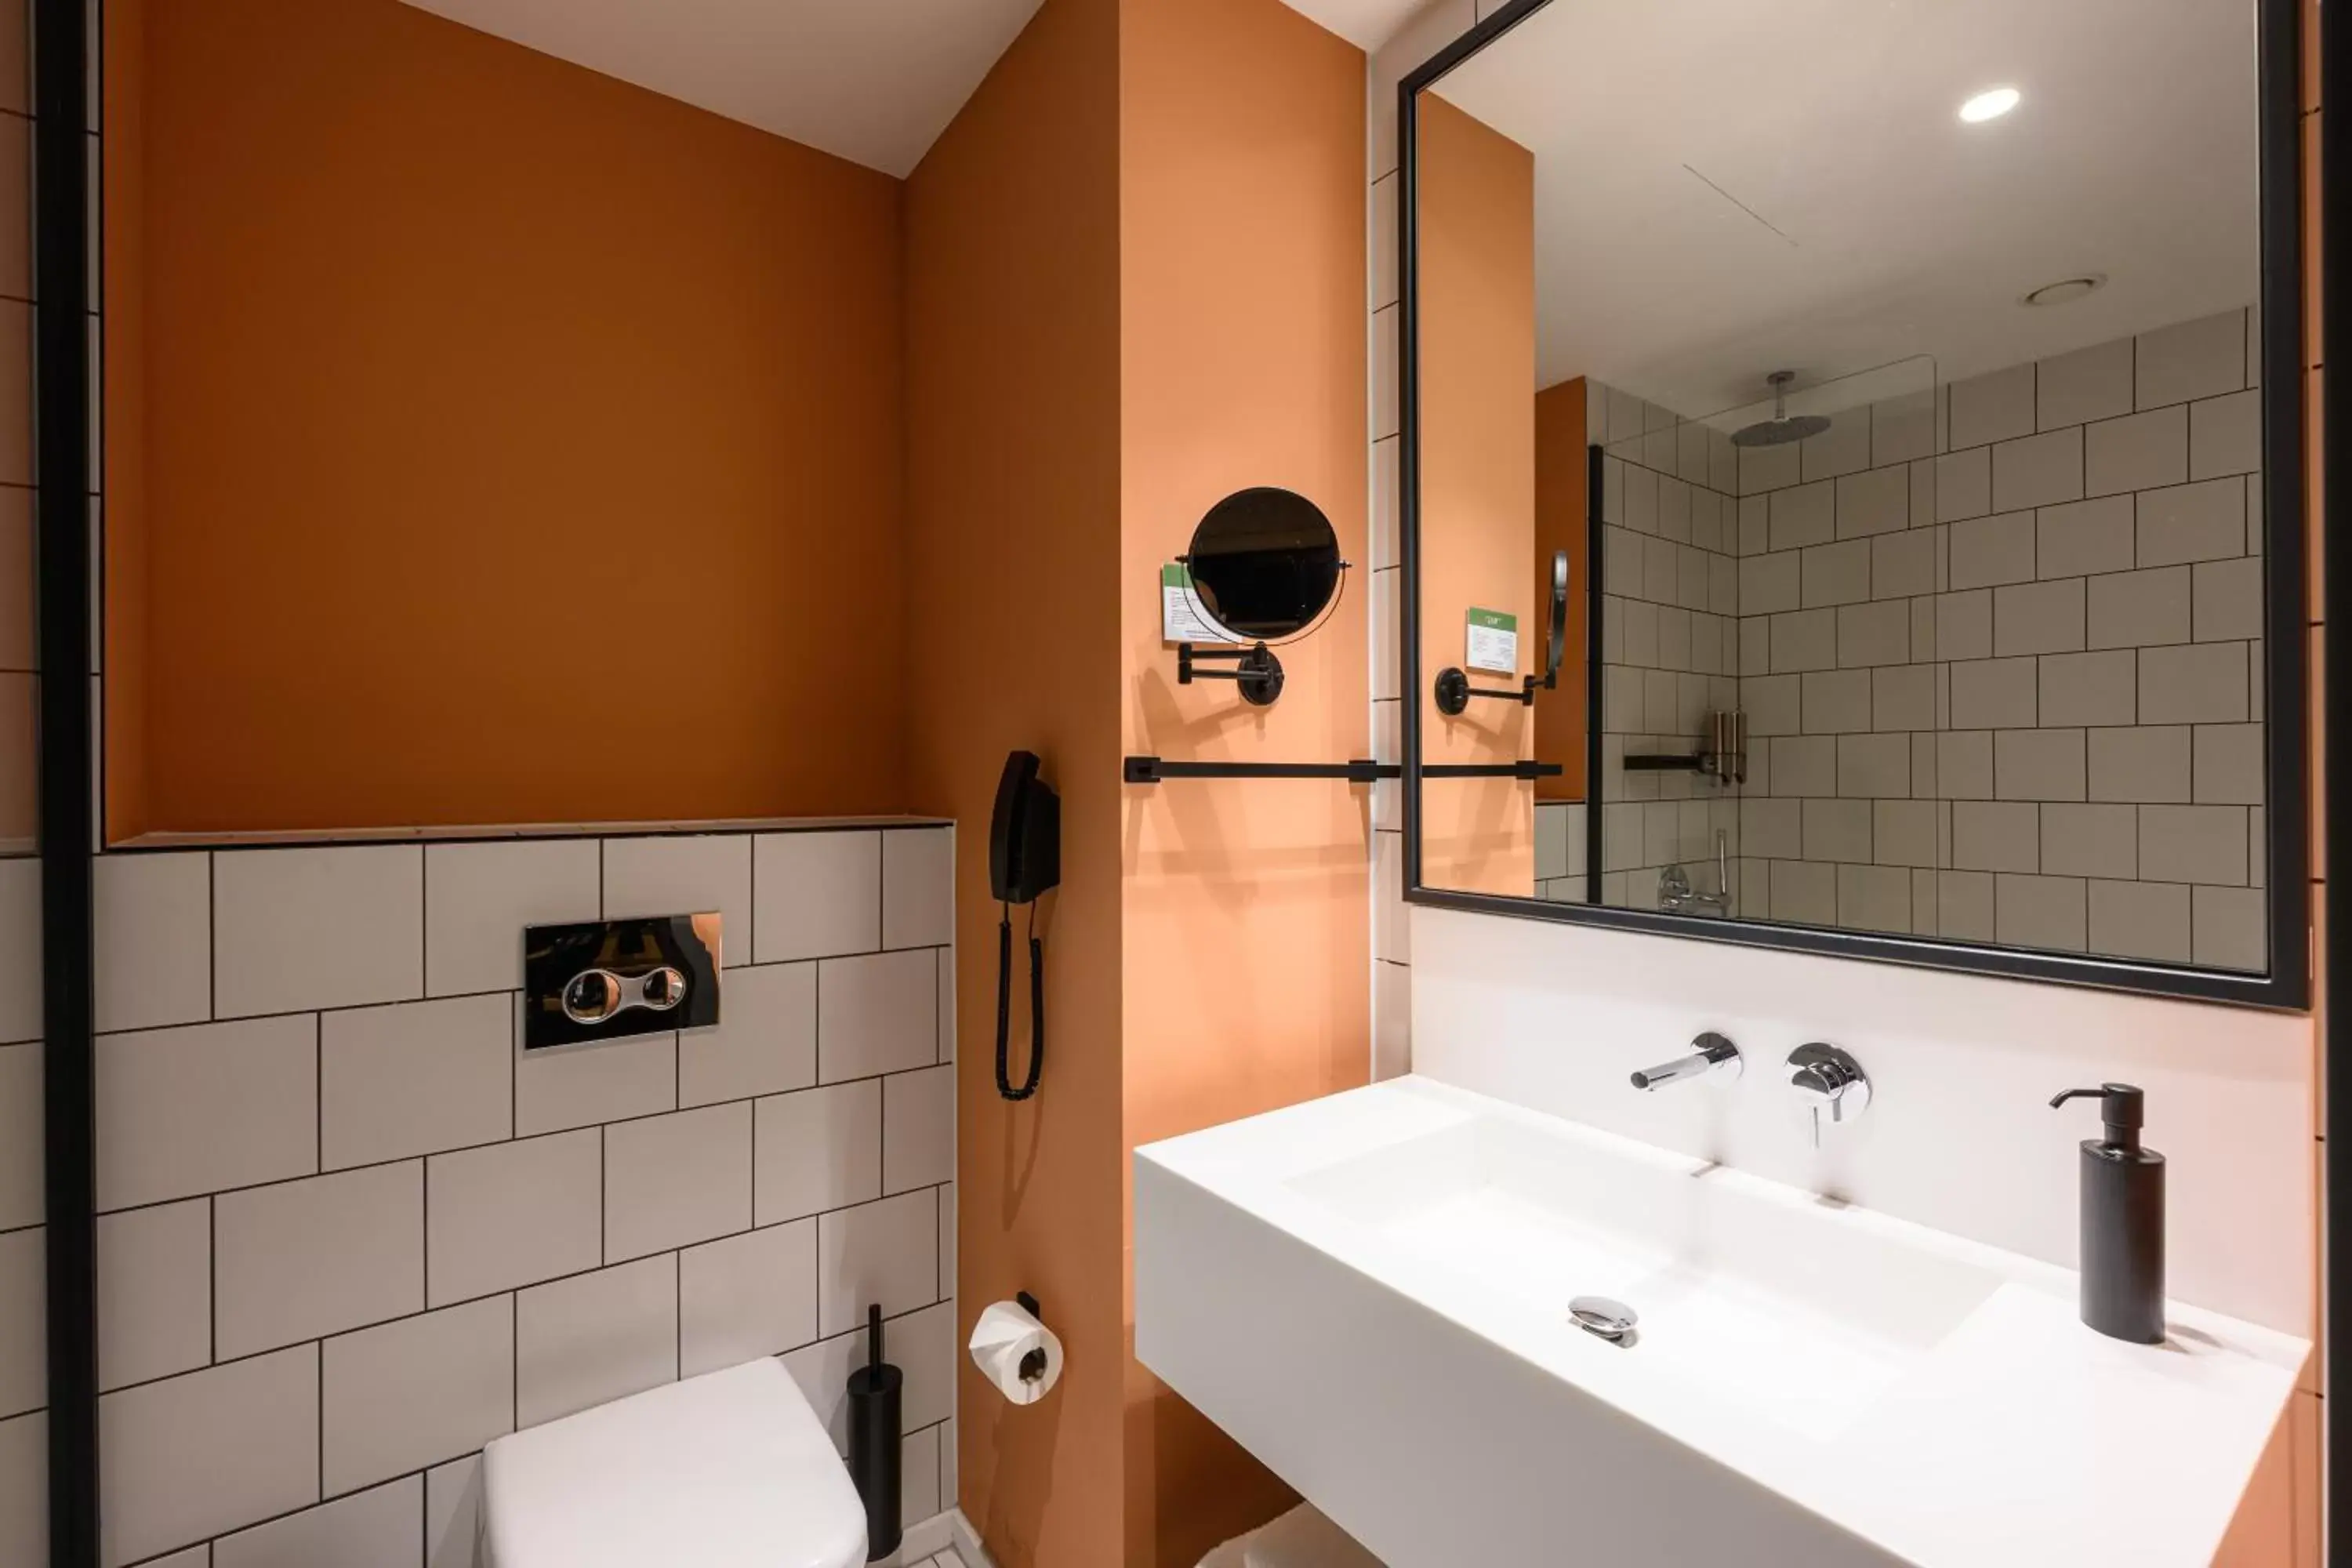 Toilet, Bathroom in NEO KVL Hotel by TASIGO